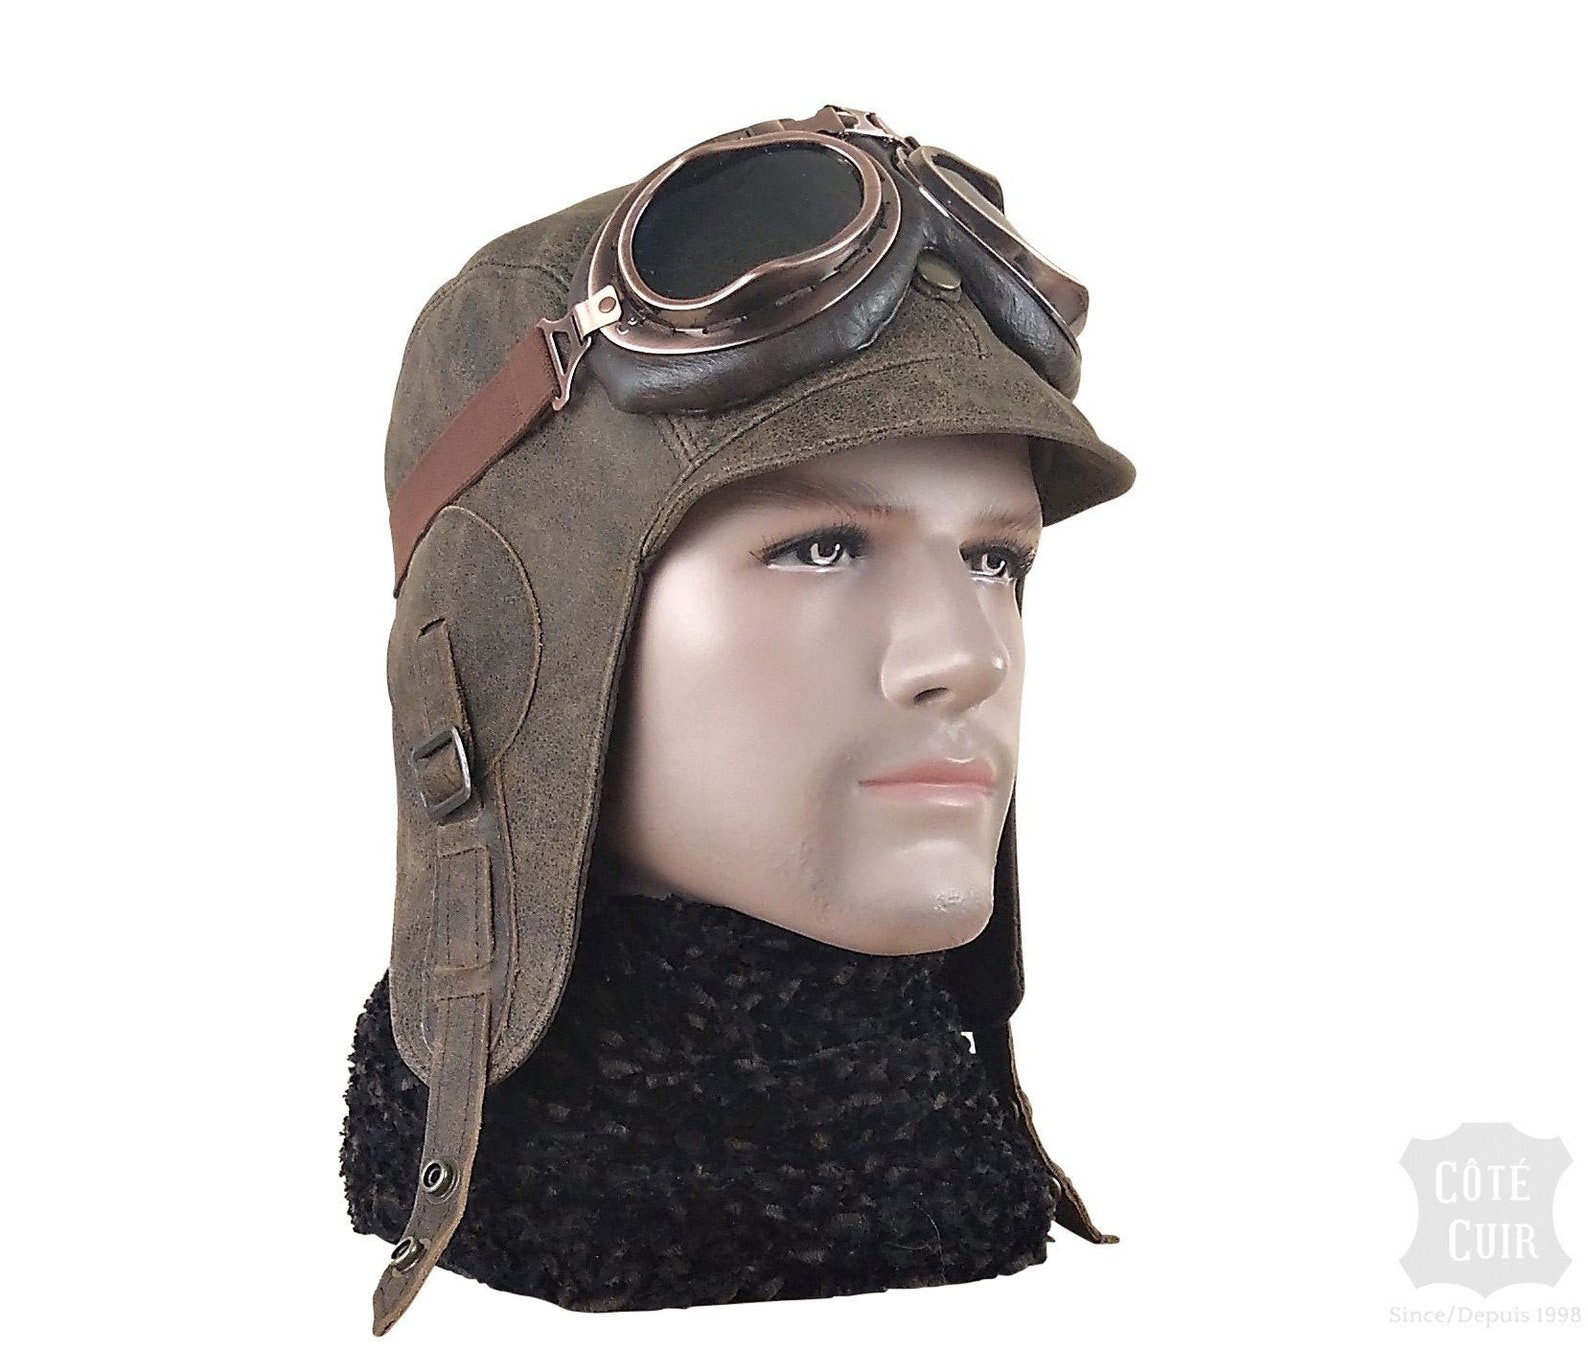 Dicks aviator hat for women